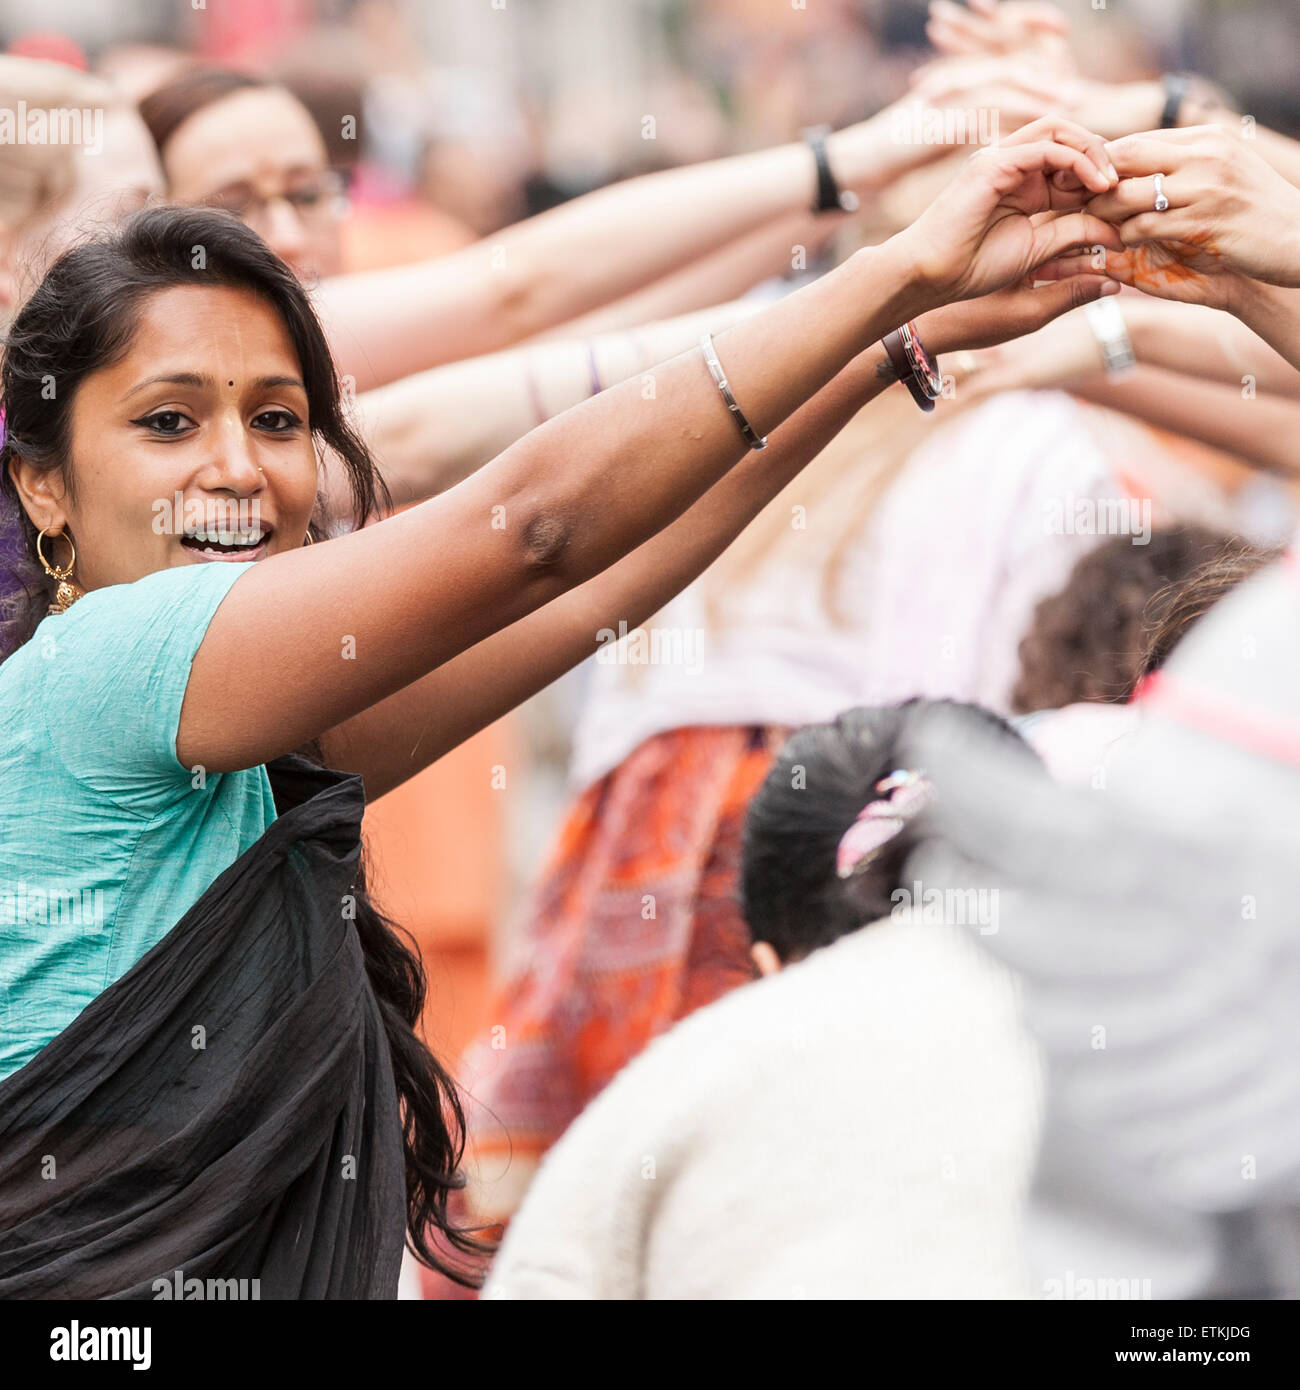 Londres, Royaume-Uni. 14 juin 2015. Les dévots Hare Krishna dansant dans Piccadilly, comme des milliers de personnes se sont rassemblées dans le centre de Londres pour célébrer le festival, Rathayatra char qui vient de Catherine Berdonneau Puri sur la côte est de l'Inde et remonte à plus de 2 000 ans. Les dévots hindous Hare Krishna et célébré sur un itinéraire de Hyde Park corner à Trafalgar Square. Crédit : Stephen Chung / Alamy Live News Banque D'Images